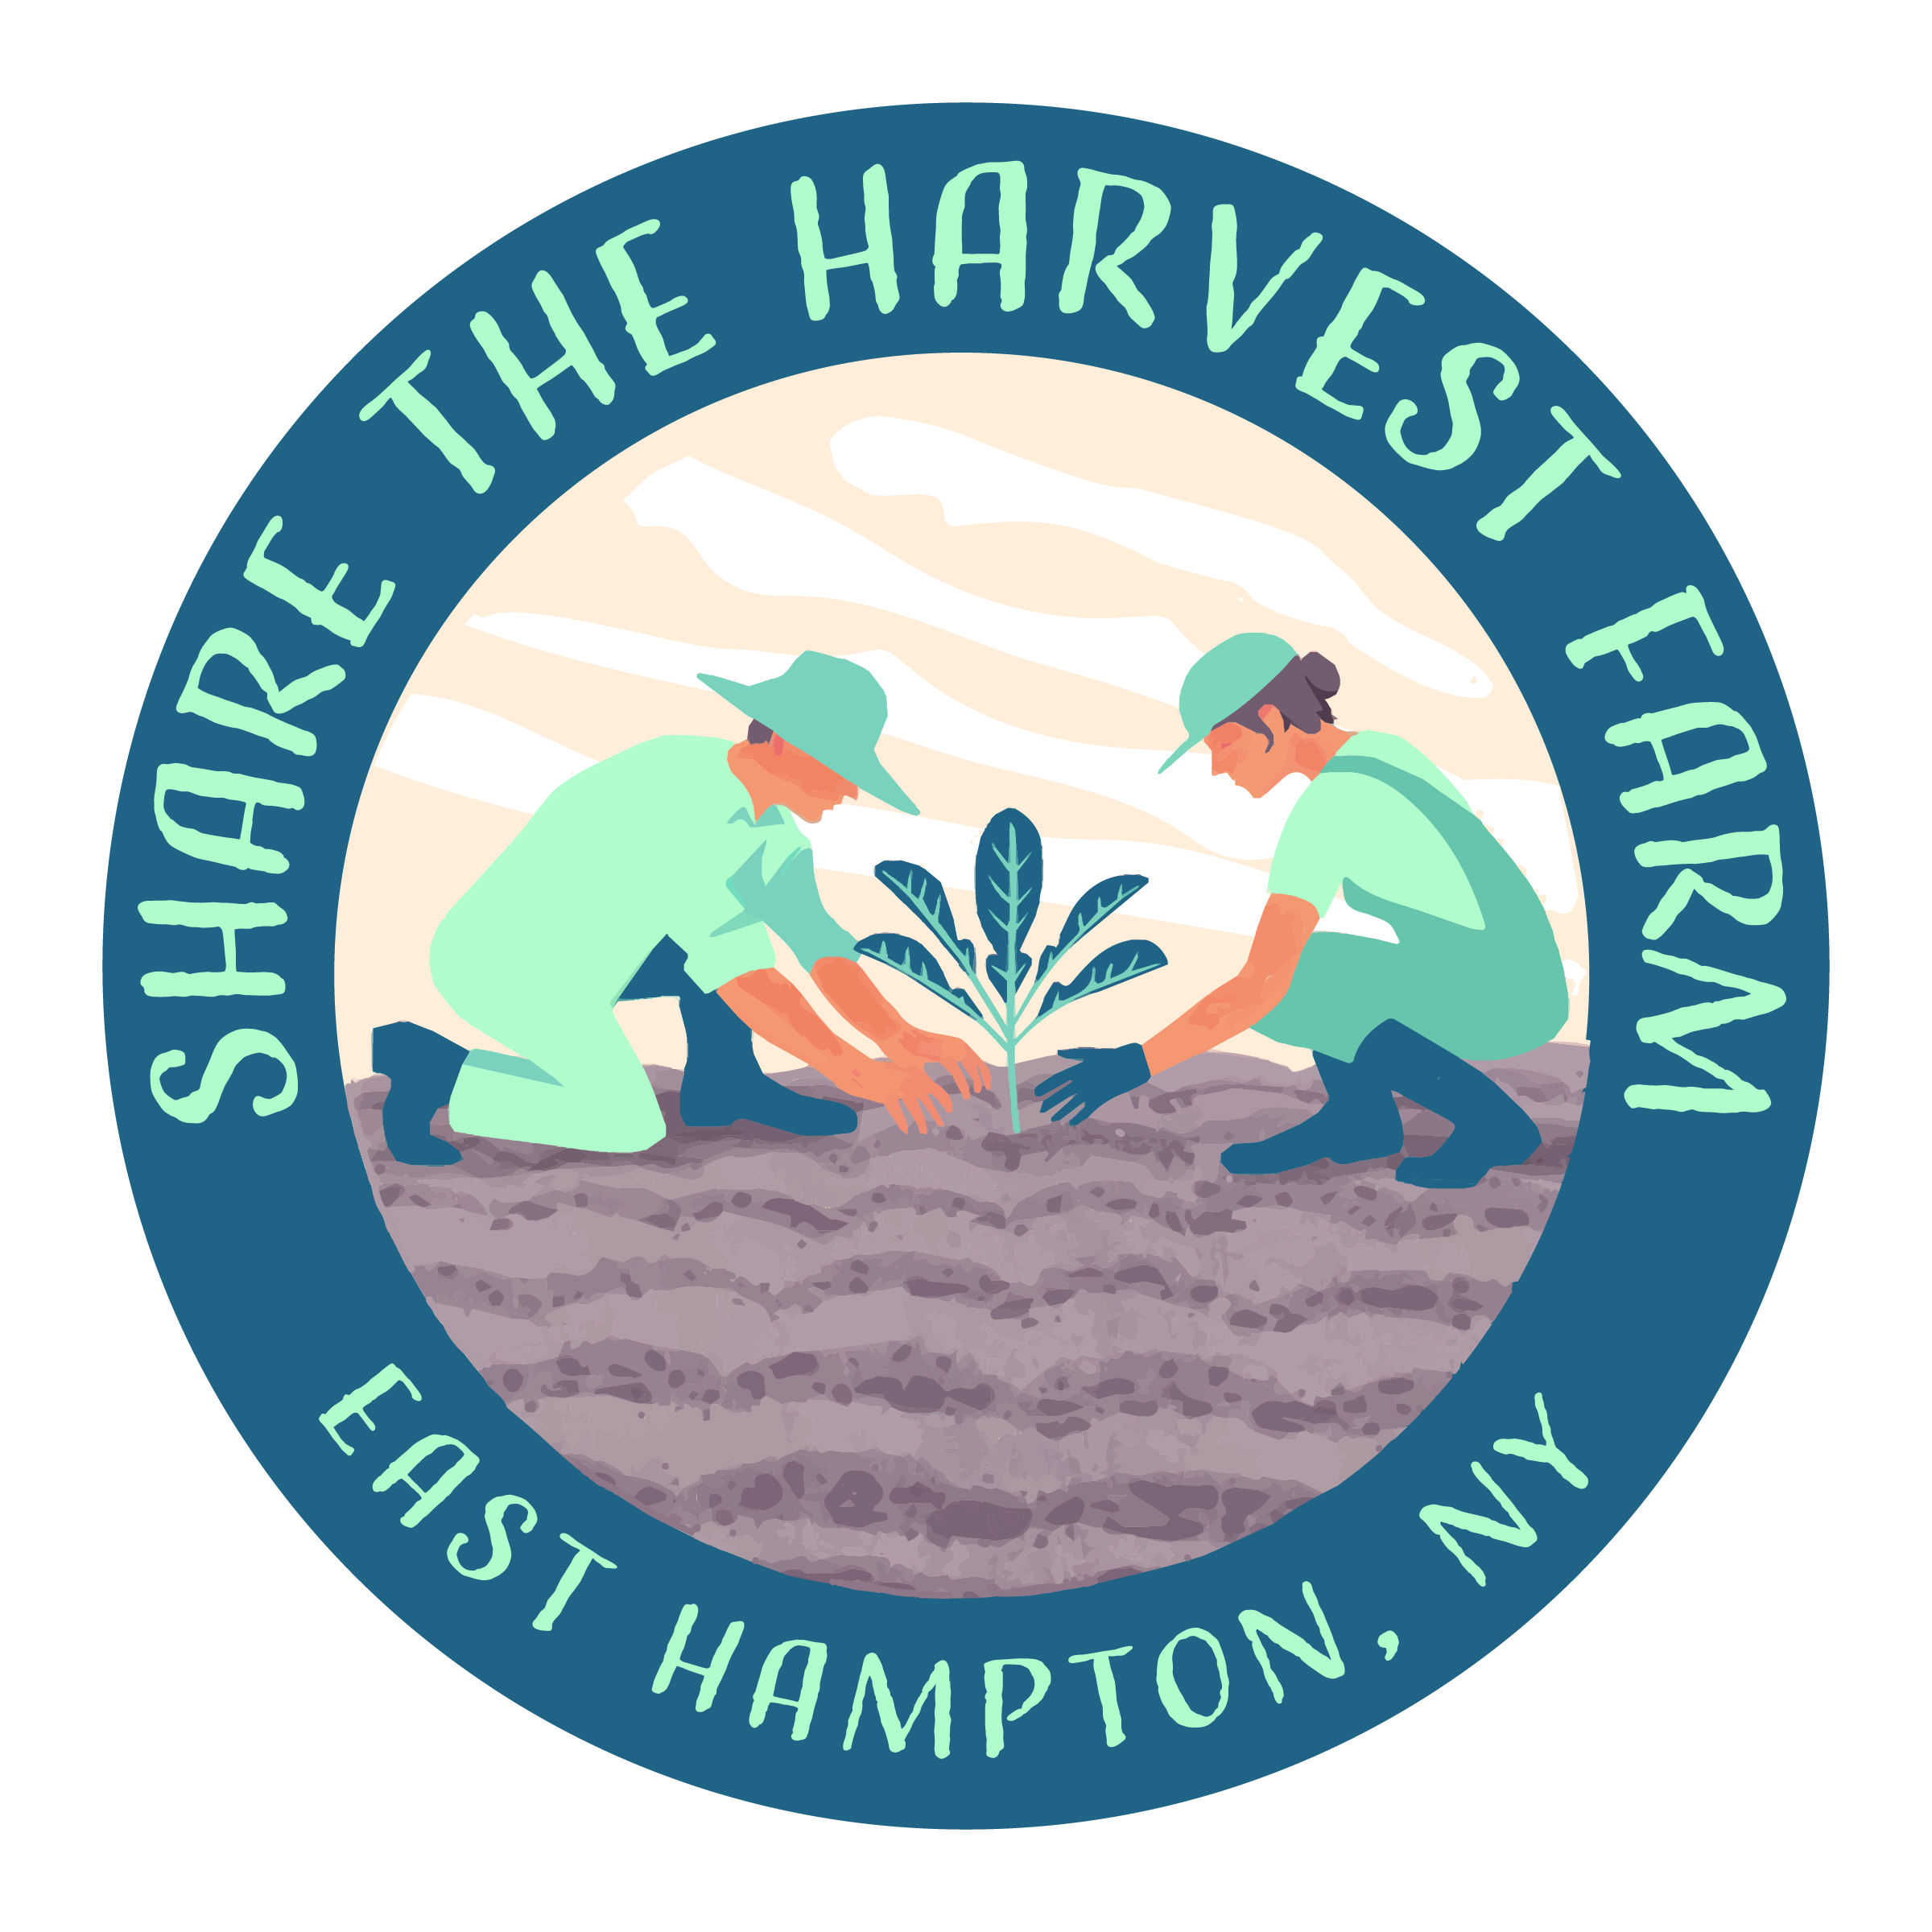 Share the Harvest Farm